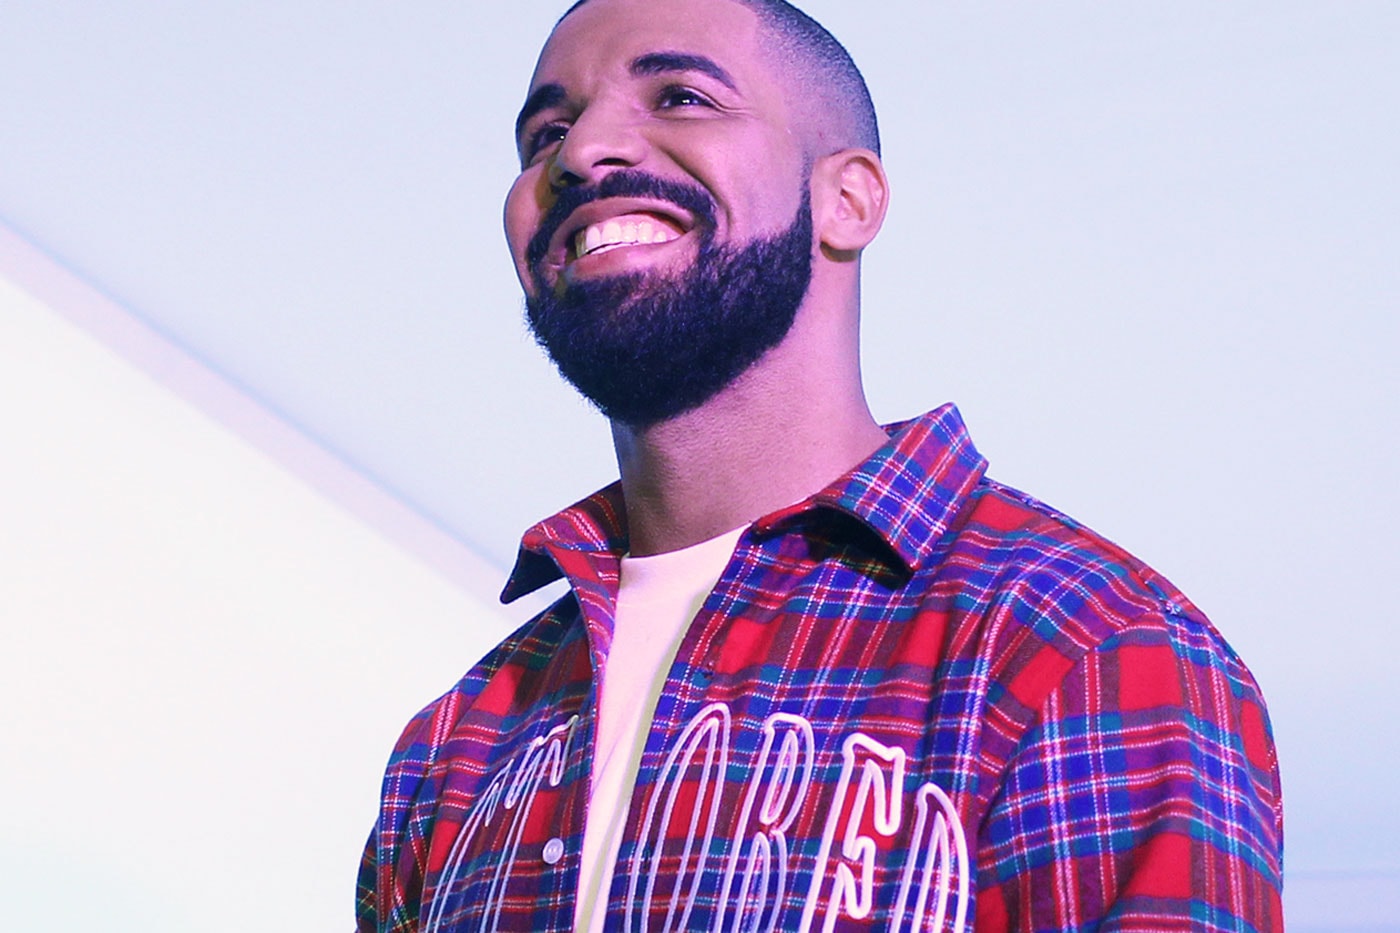 Drake "Hotline Bling" Music Video